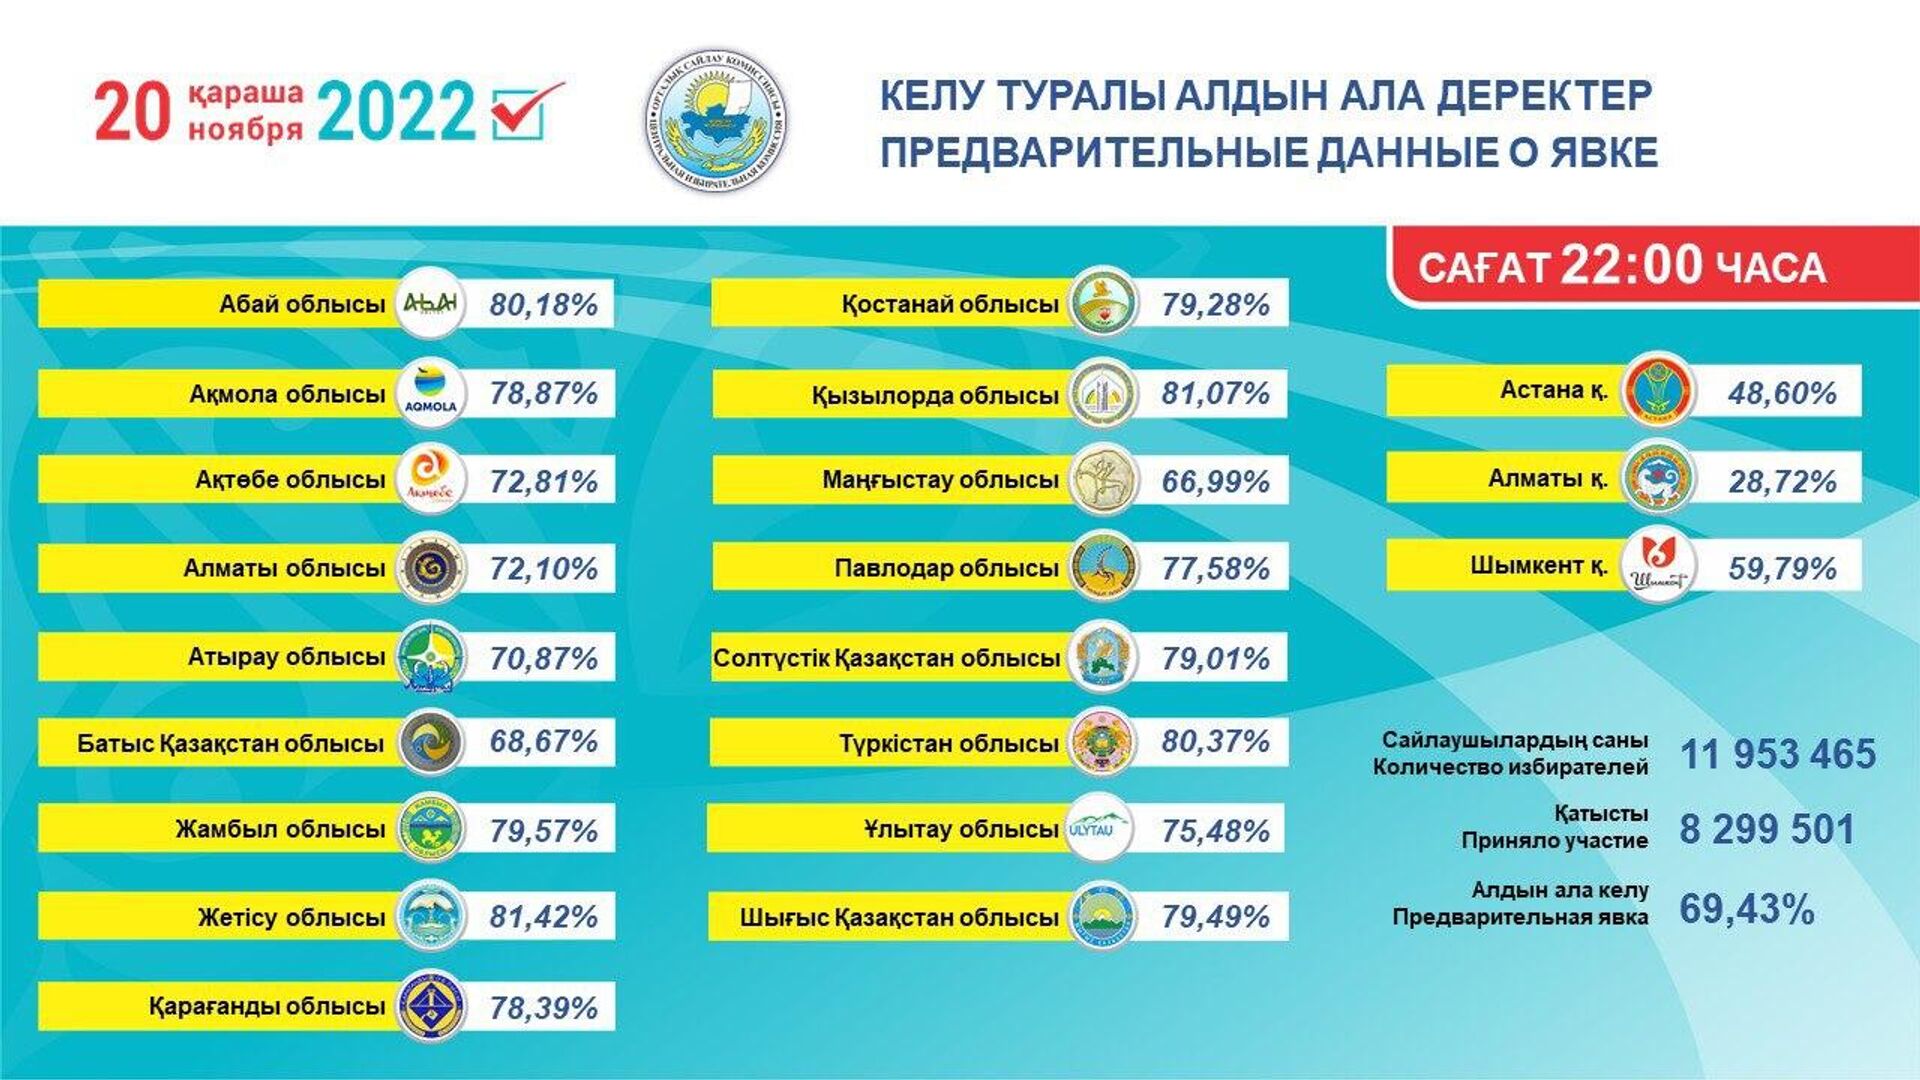 Сколько дней в астане. Выбор Казахстана. Выборы в Казахстане в 2022 году. Выборы президента Казахстана. Итоги выборов президента 2022.